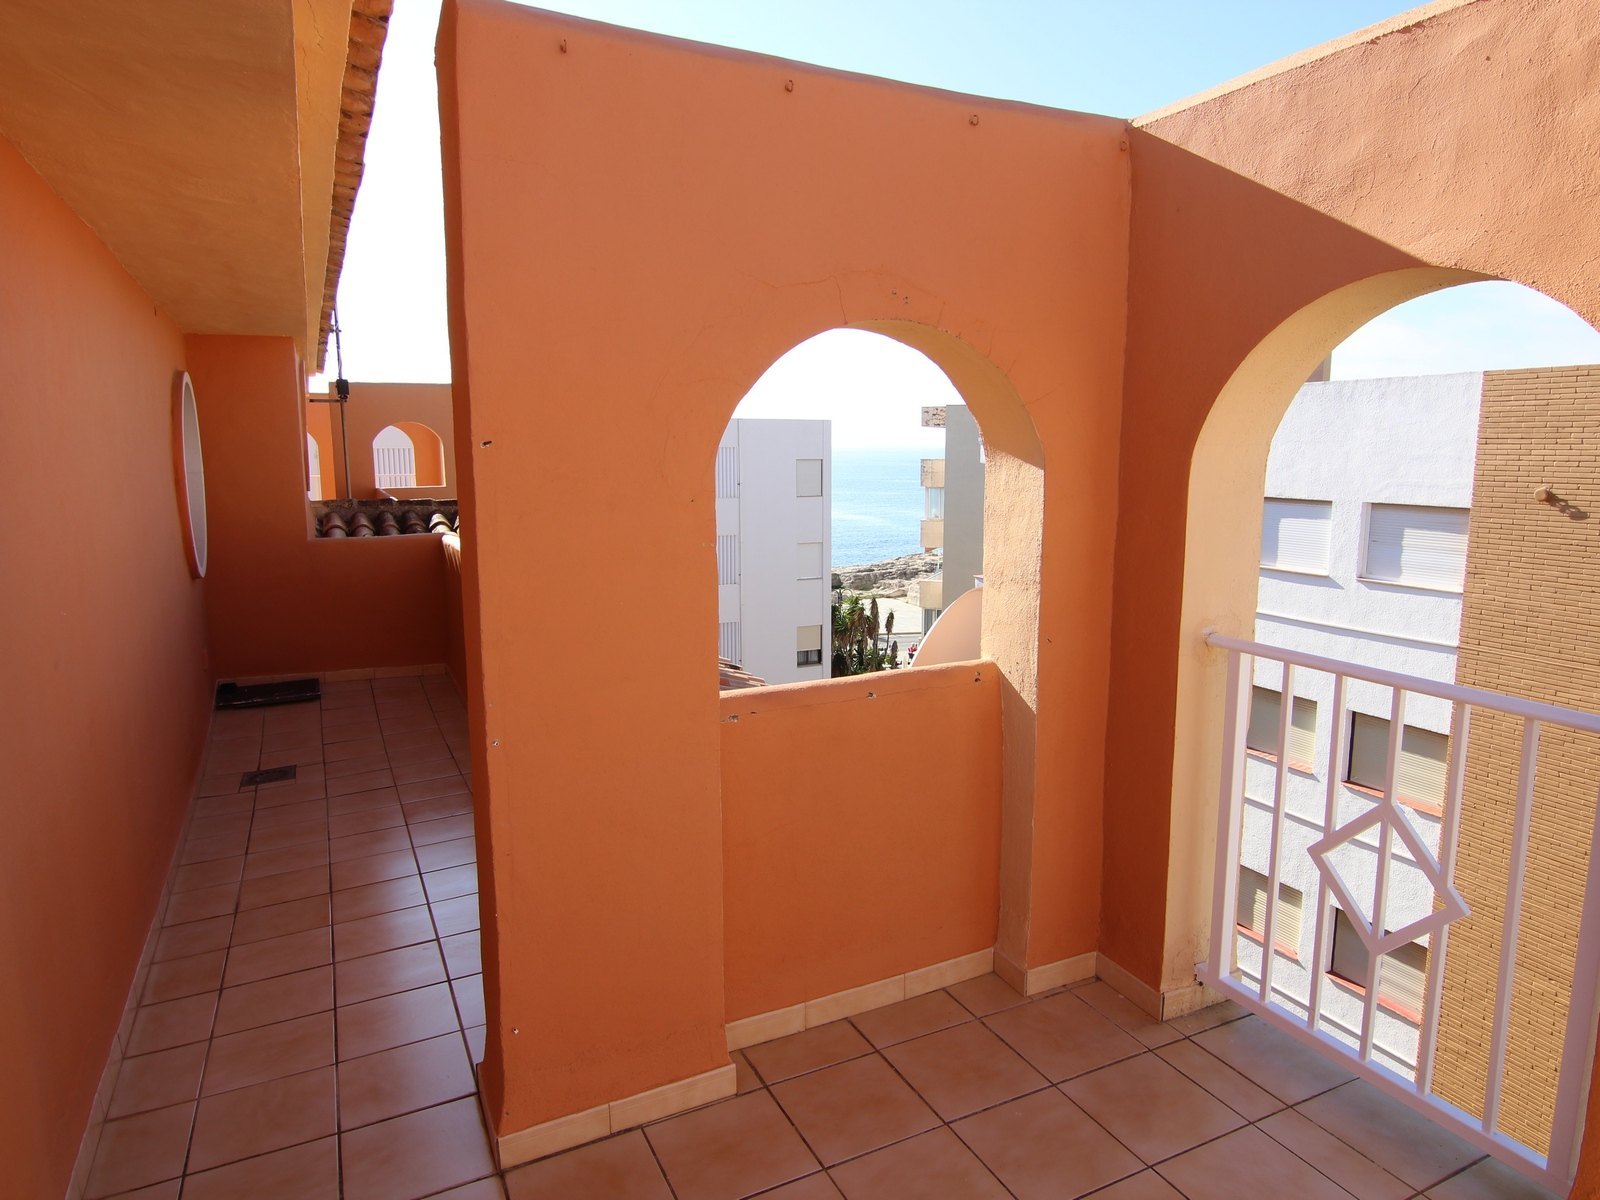 Wunderschönes total renoviertes Penthouse zum Verkauf in Moraira mit einer grossen Terrasse und herrlicher Meersicht.